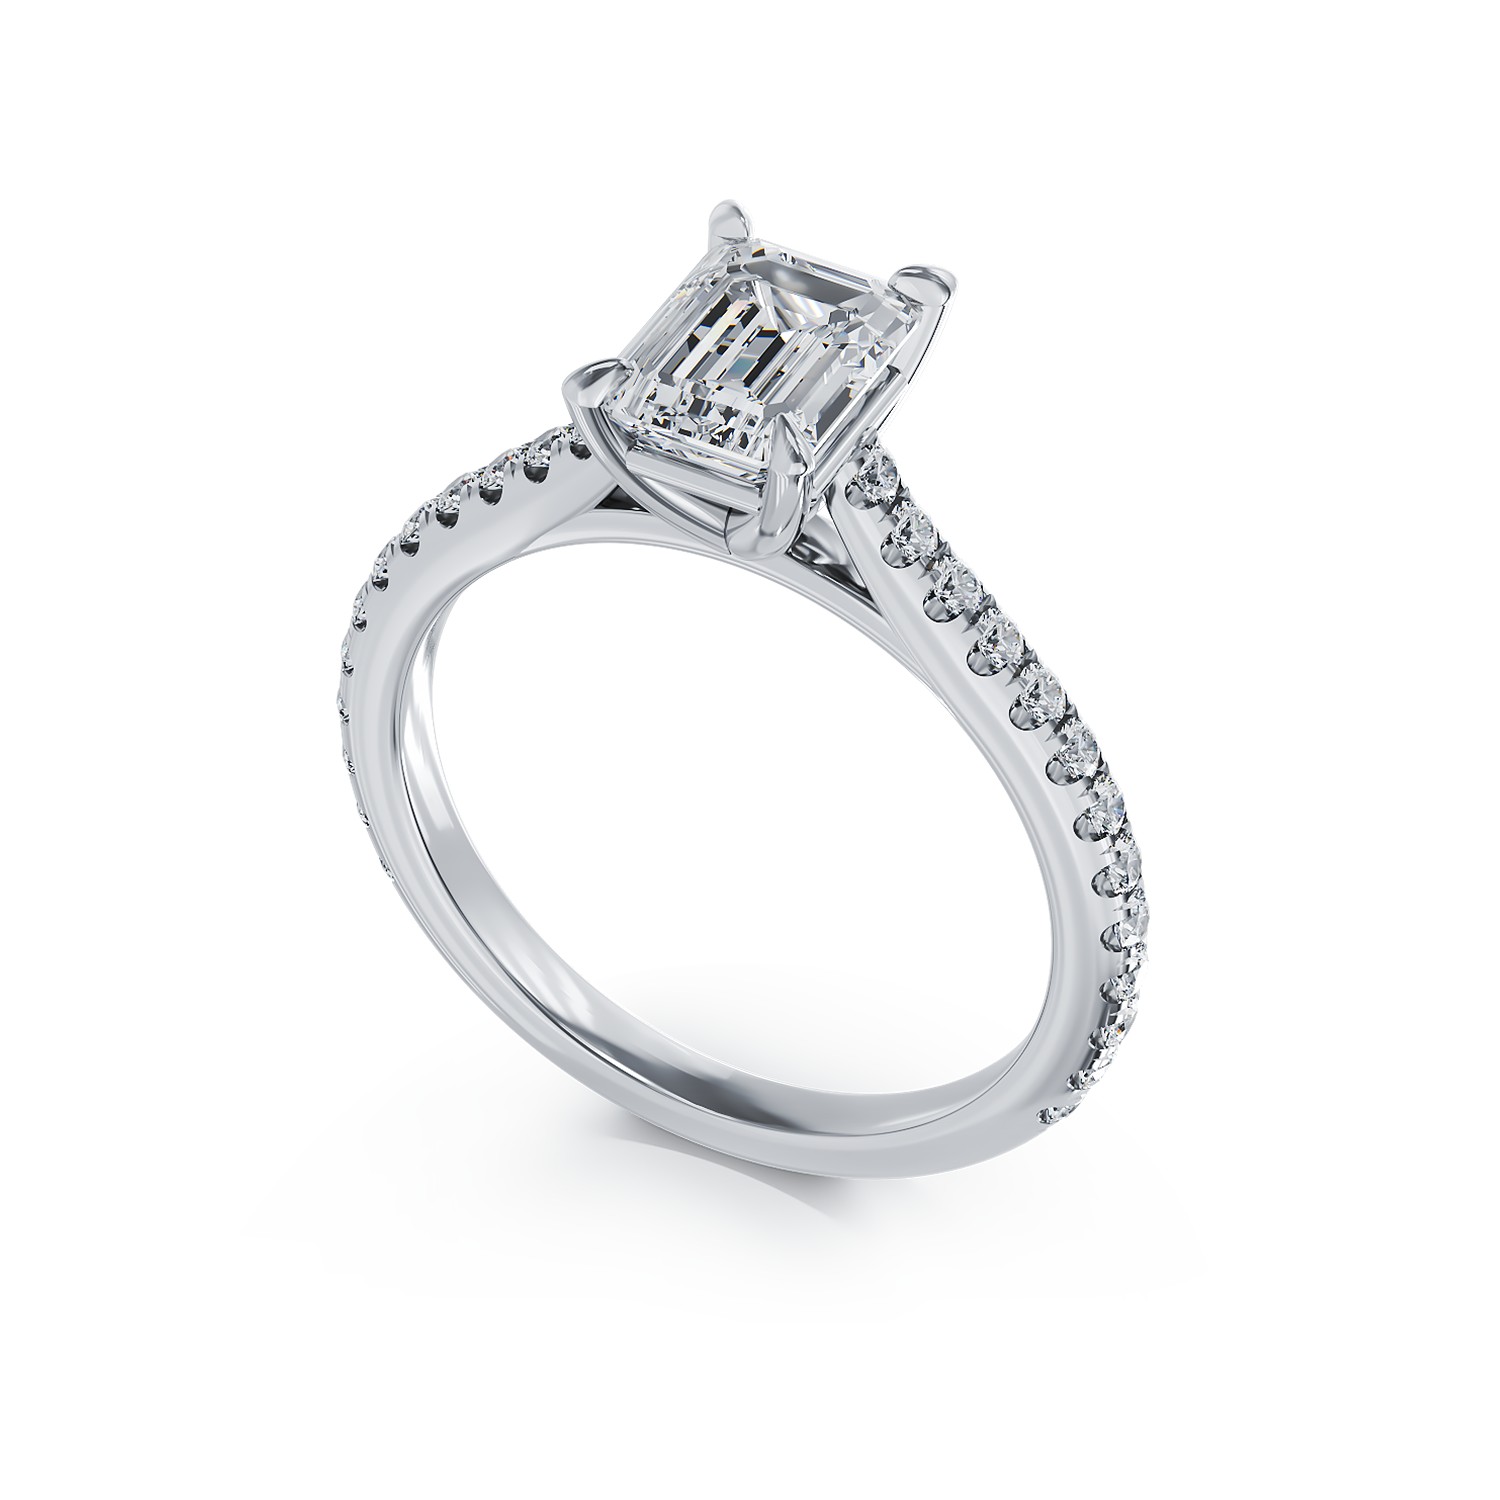 Годежен пръстен от бяло злато 18К с диаманти 1.2гкт и диаманти 0.285гкт.